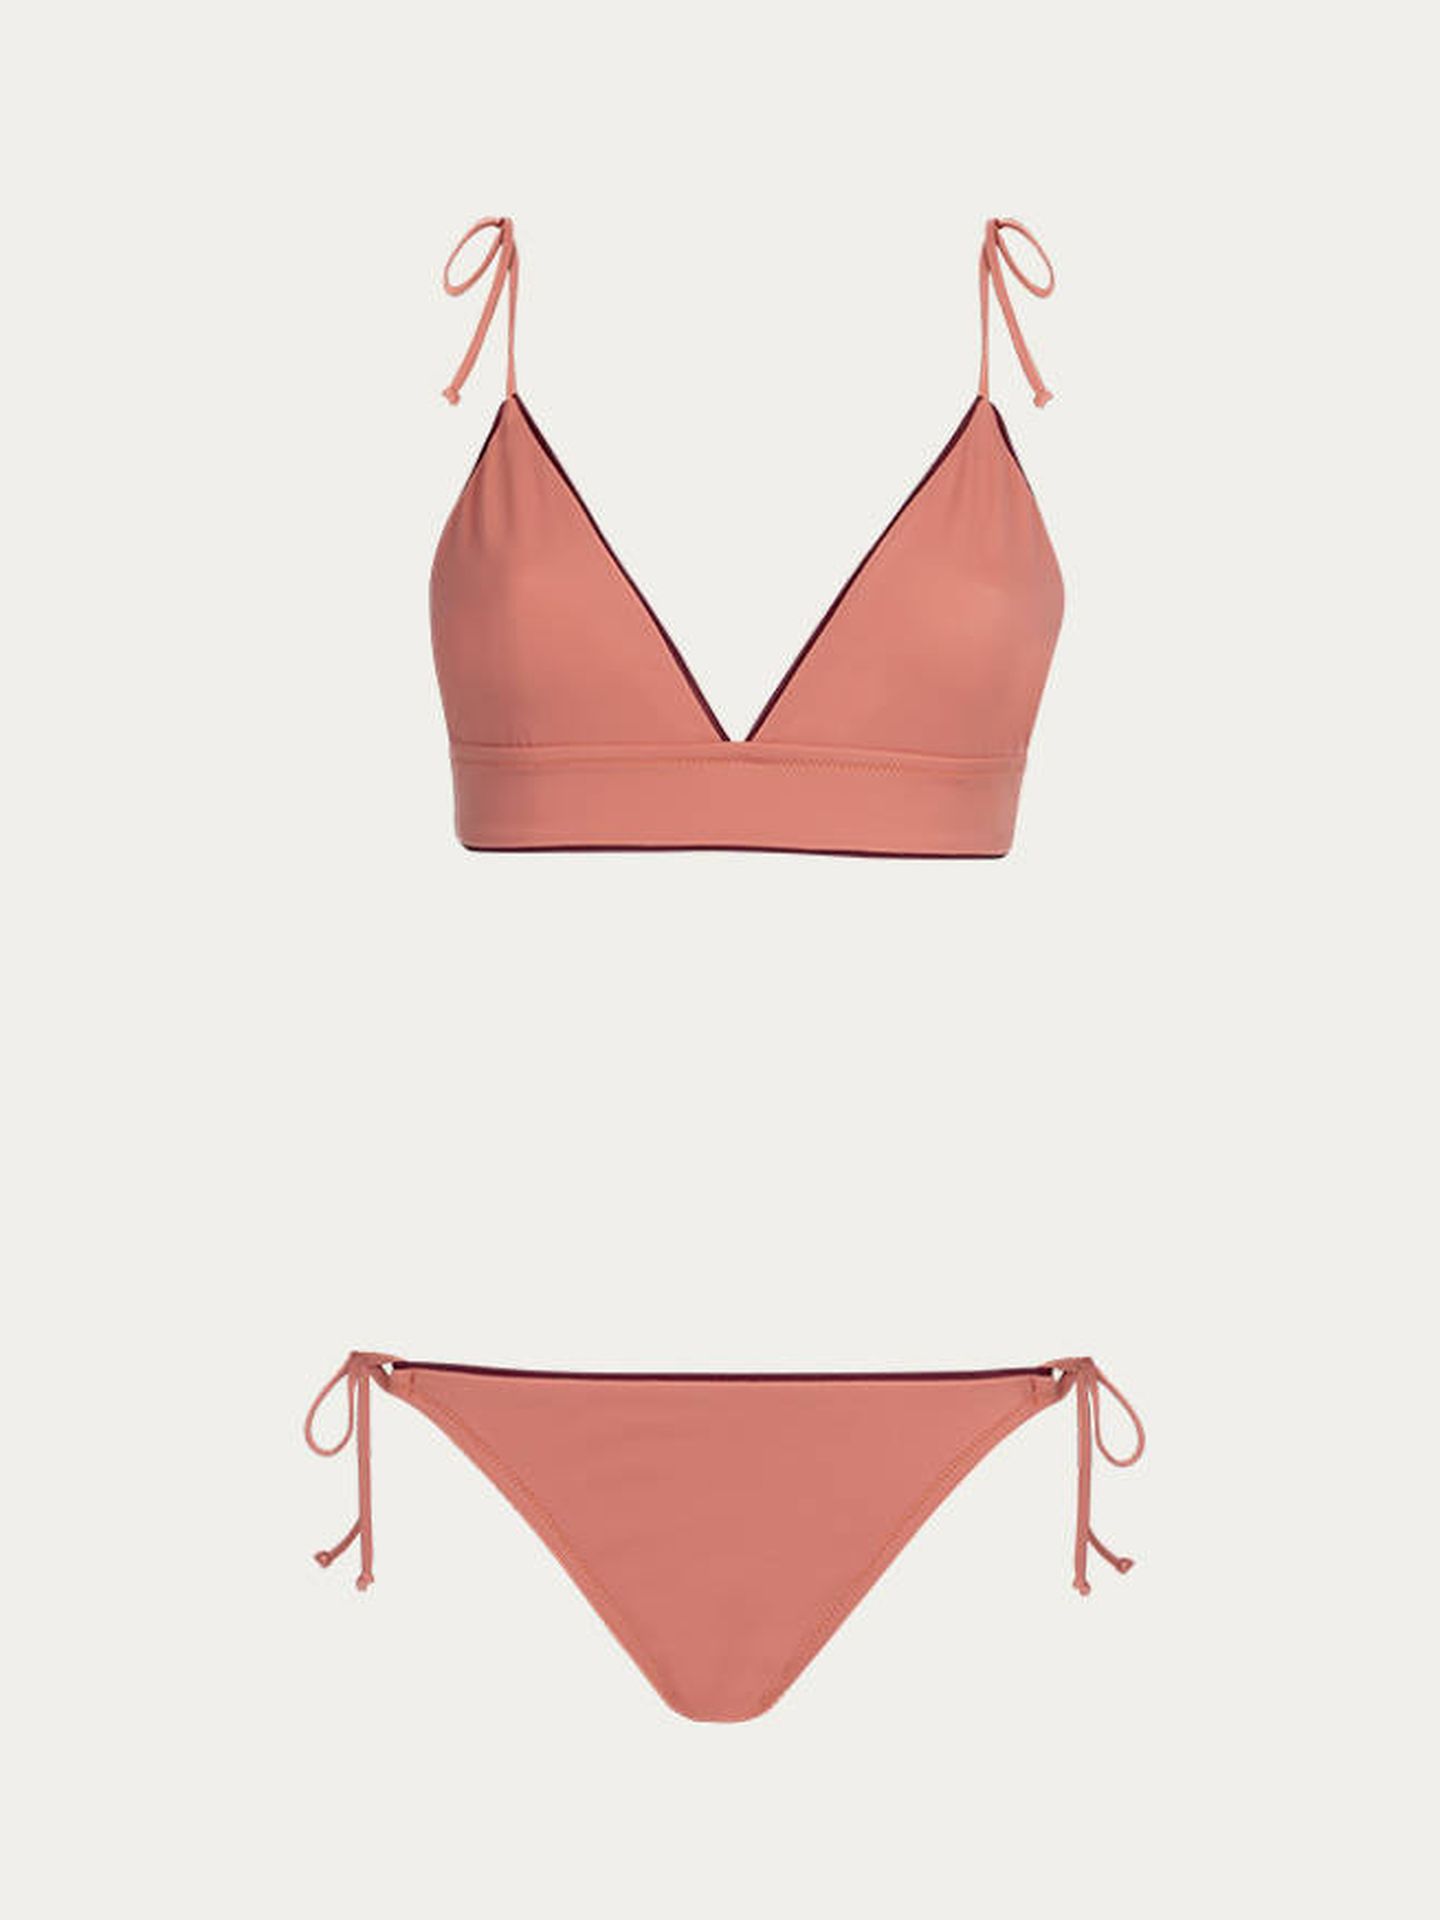 Este es el bikini que luce Laura Vecino en Instagram. (Cortesía)